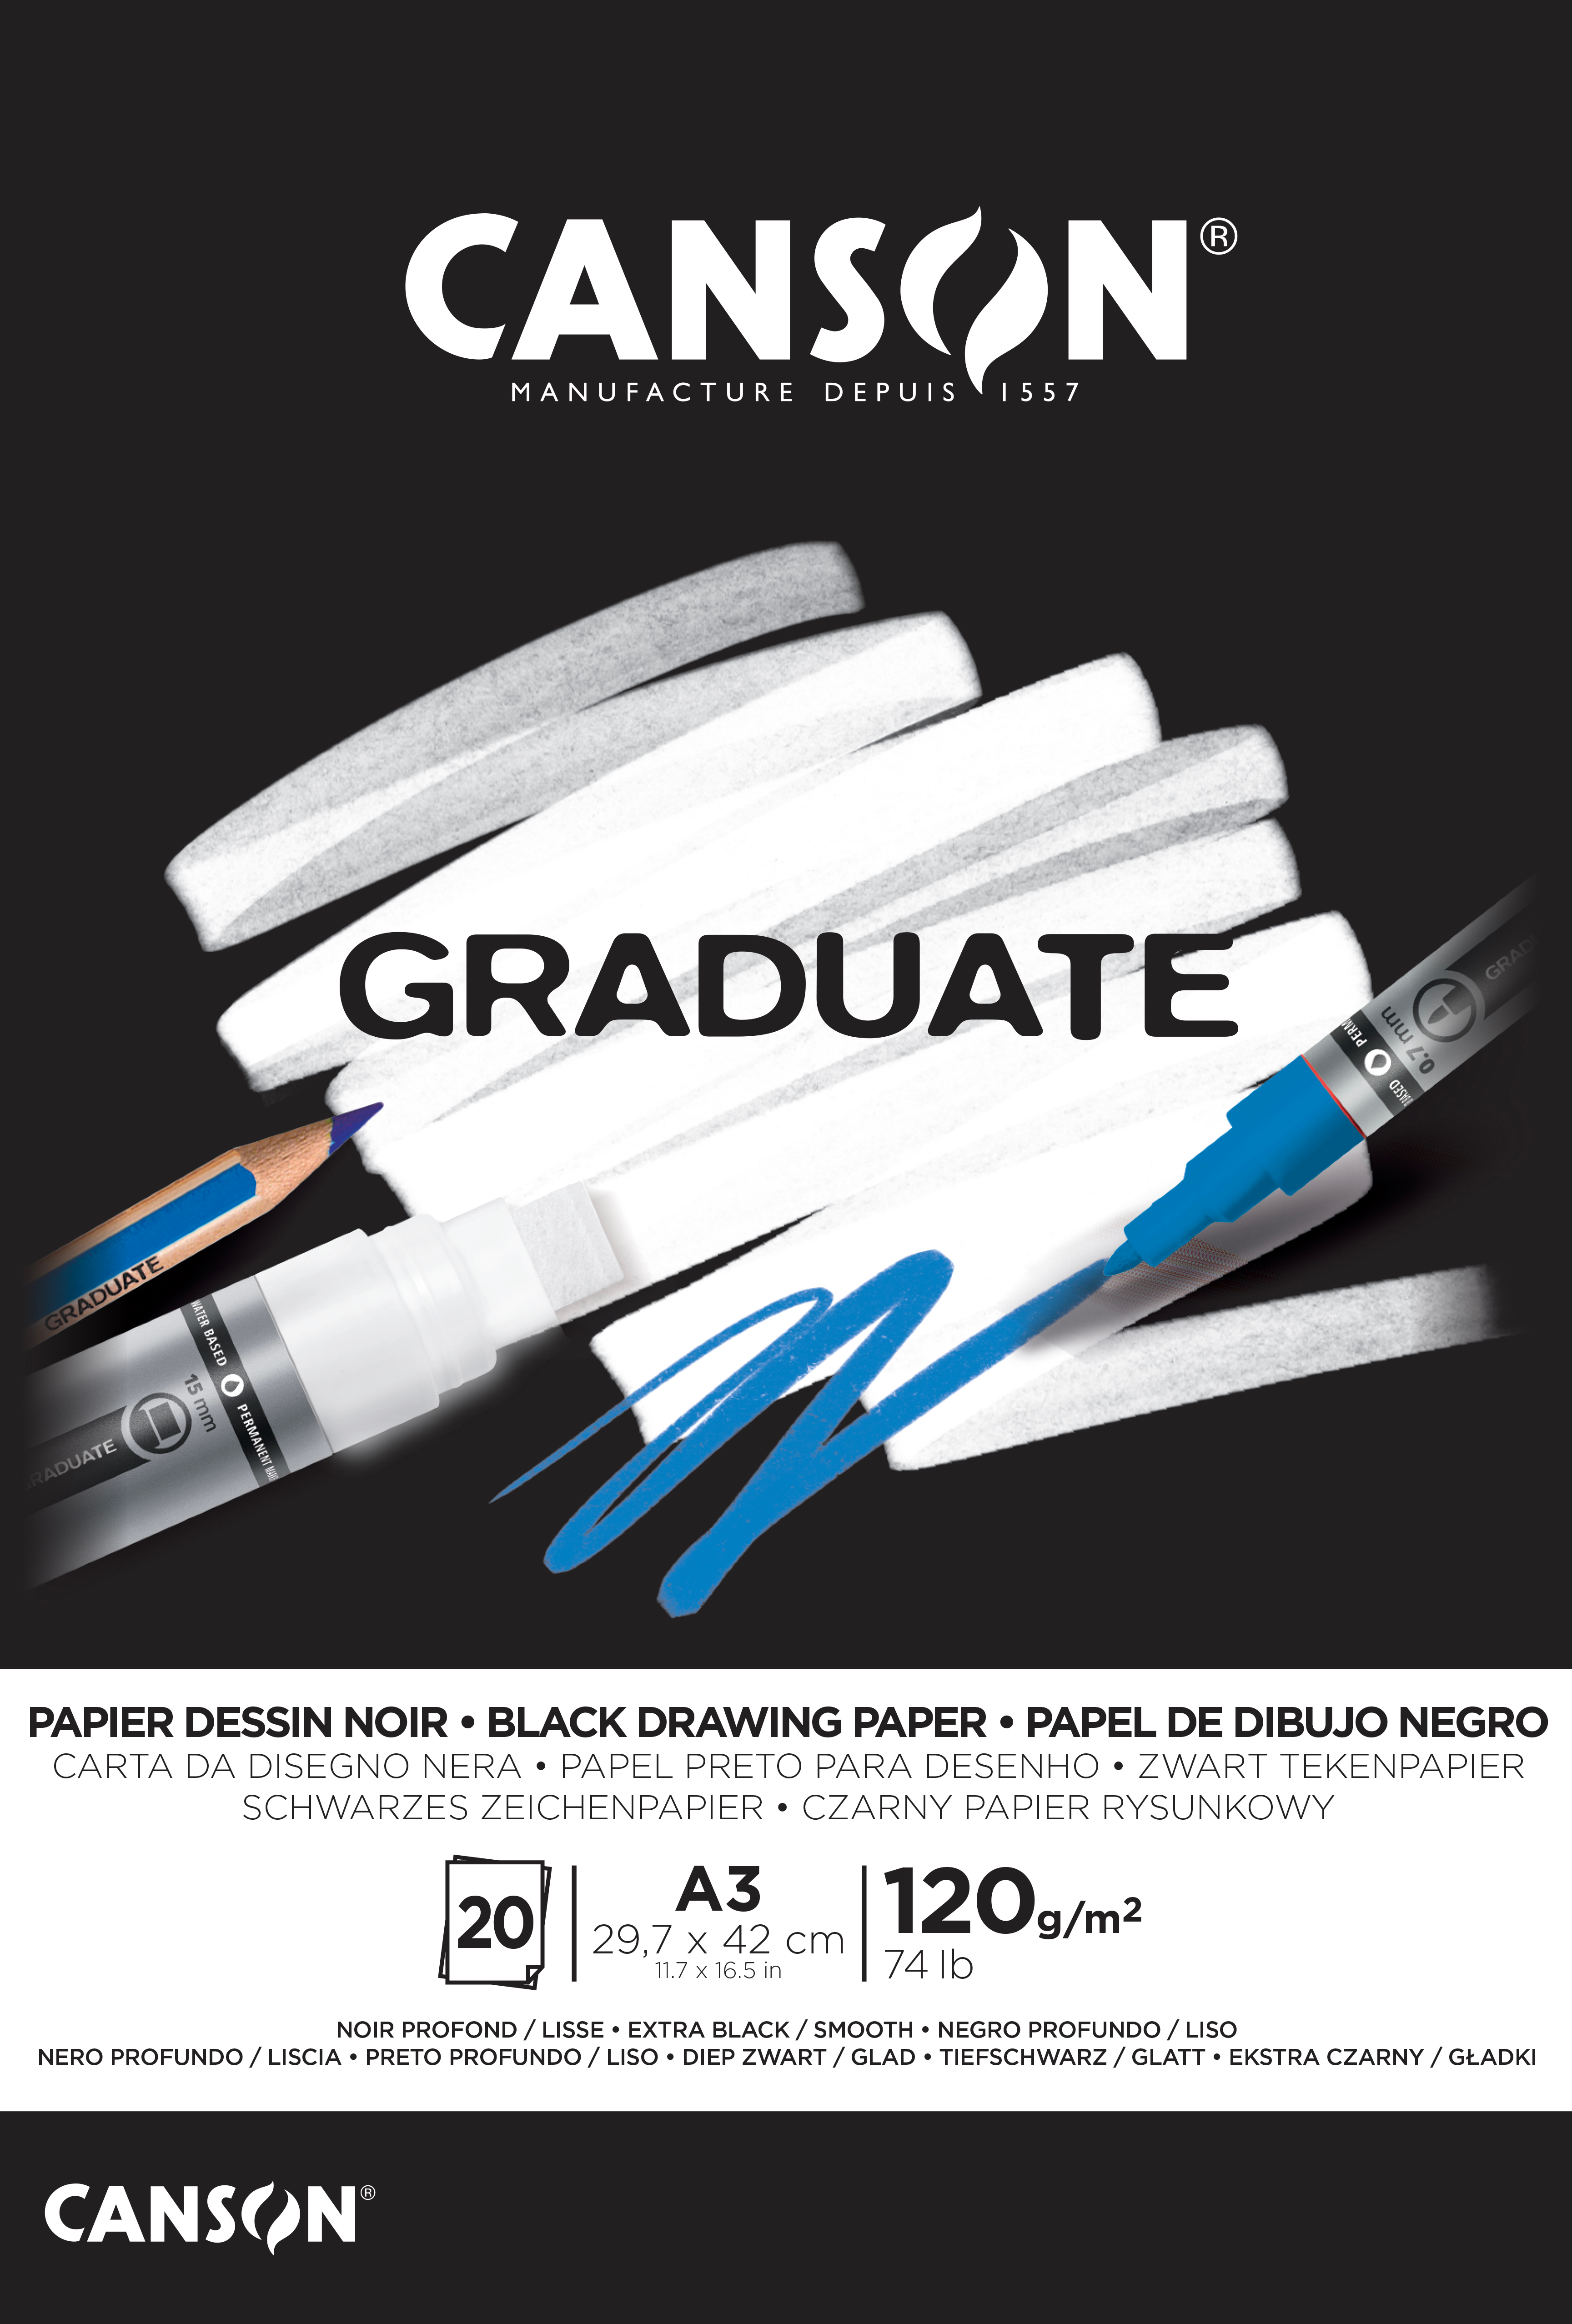 CANSON Graduate papier à dessin A3 400110387 20 flles, noire, 120g